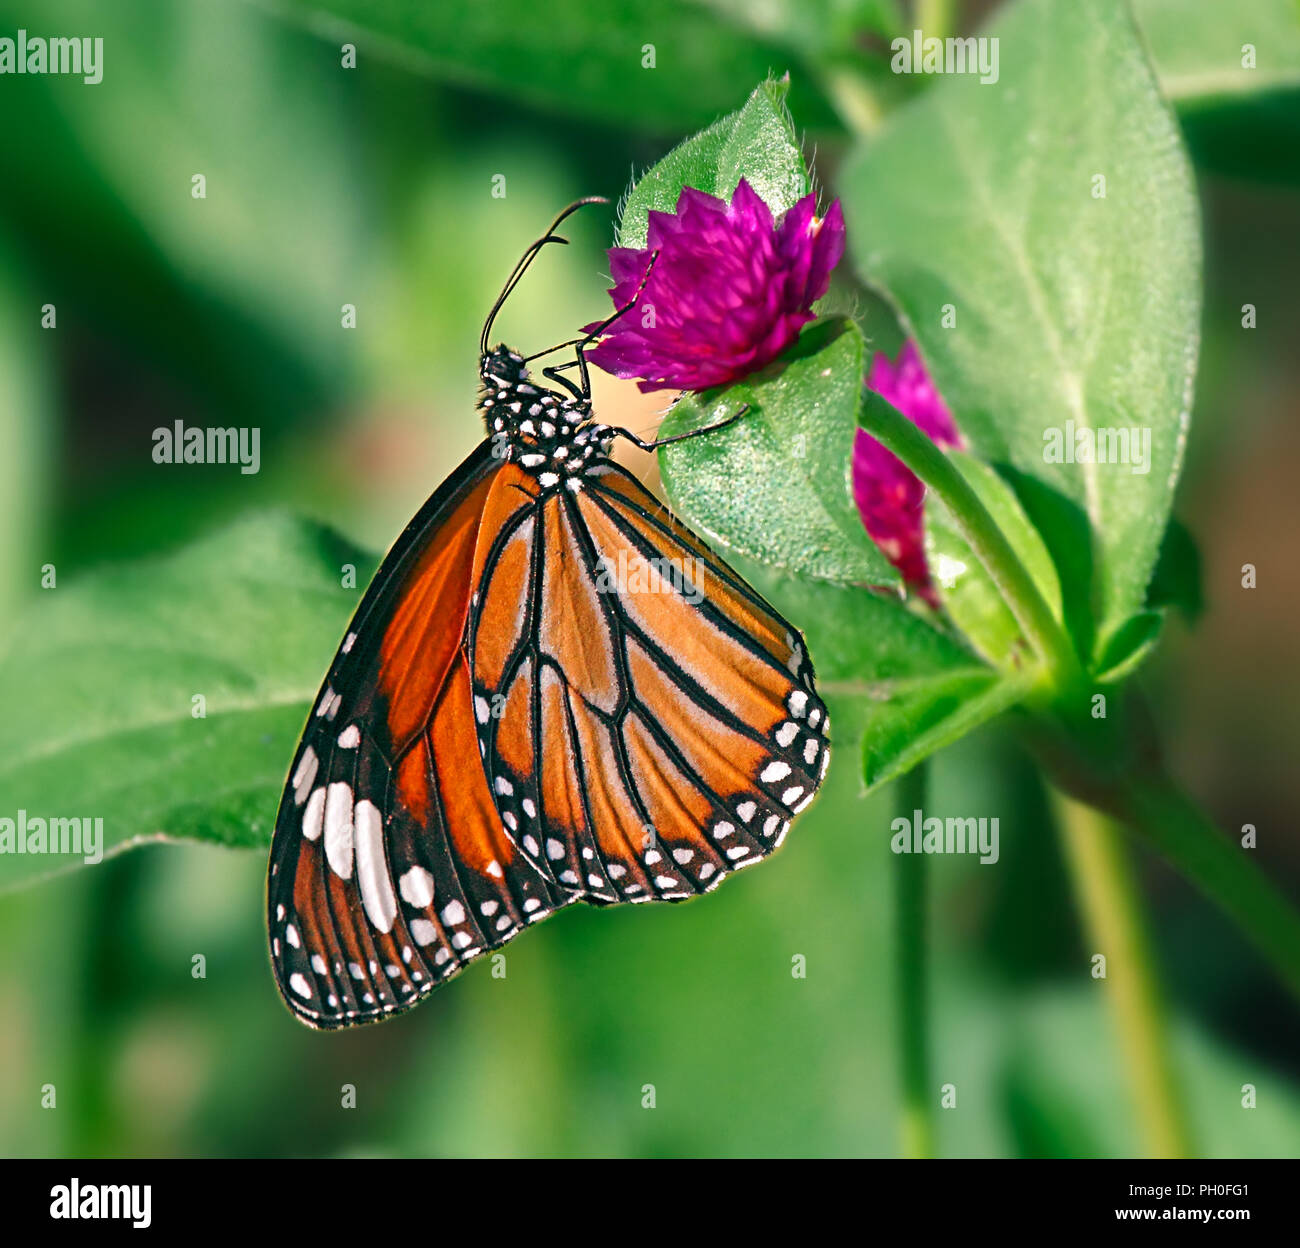 Danaus genutia u oriental tigre de rayas naranja mariposa sobre una flor morada de gomphrena globosa o mundo común el amaranto. Foto de stock